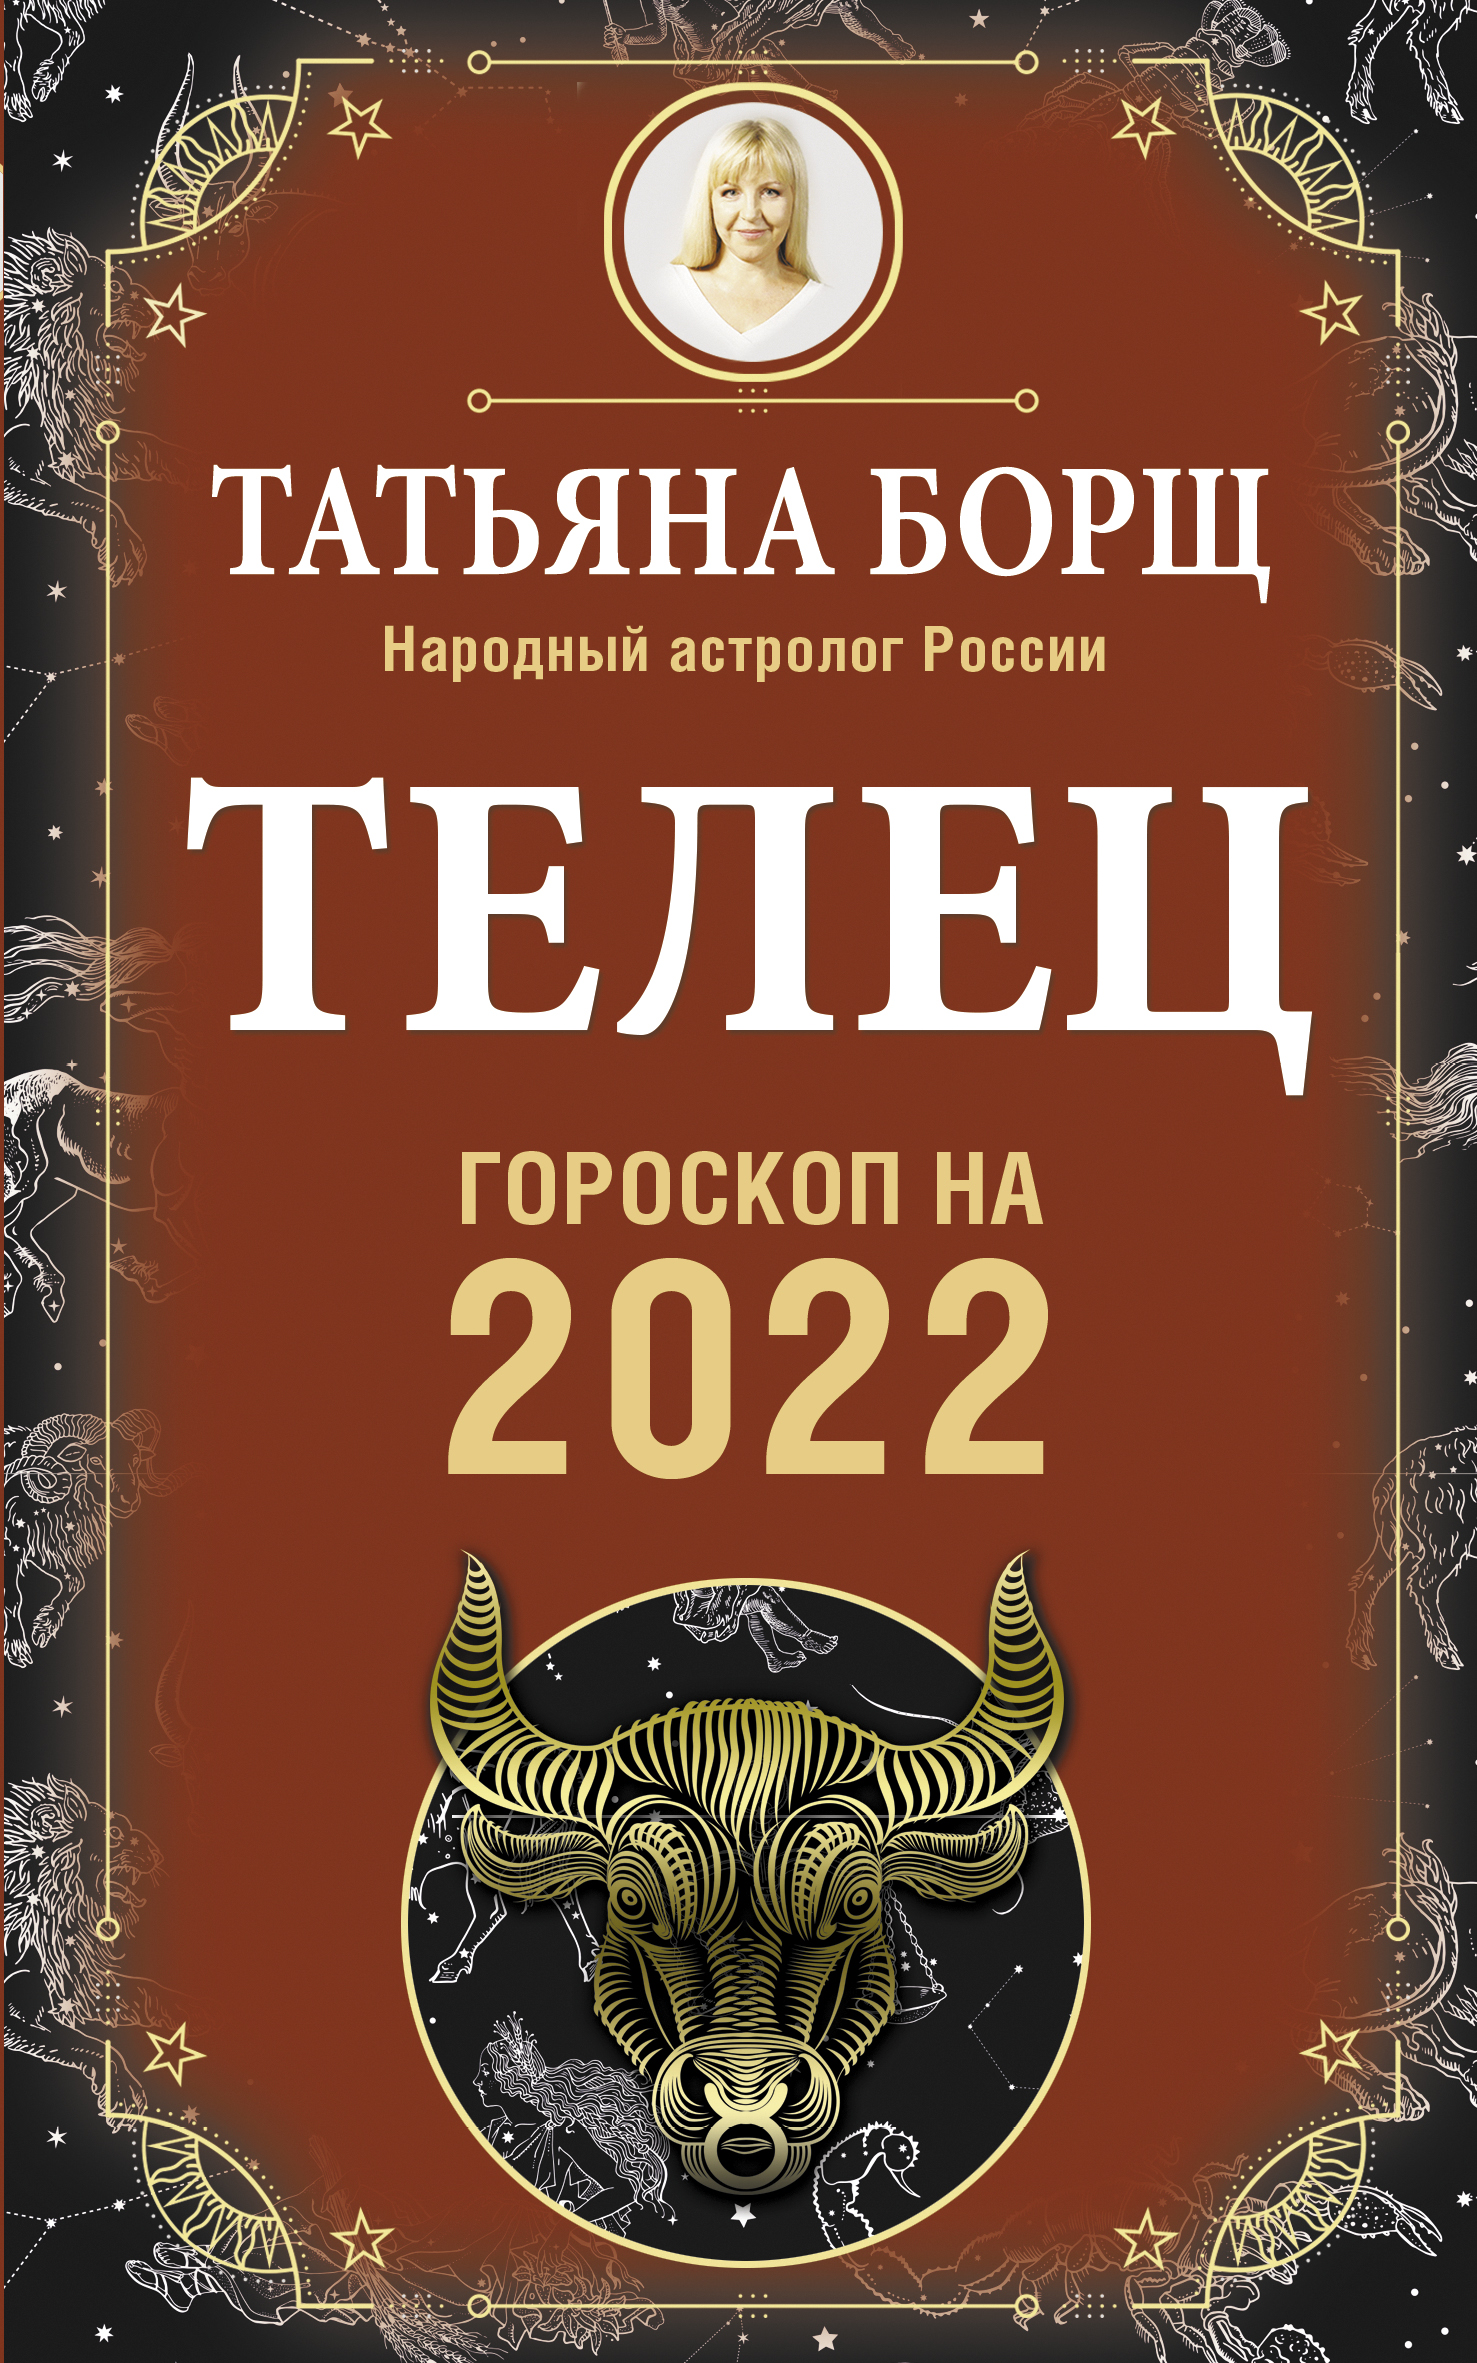   .   2022  